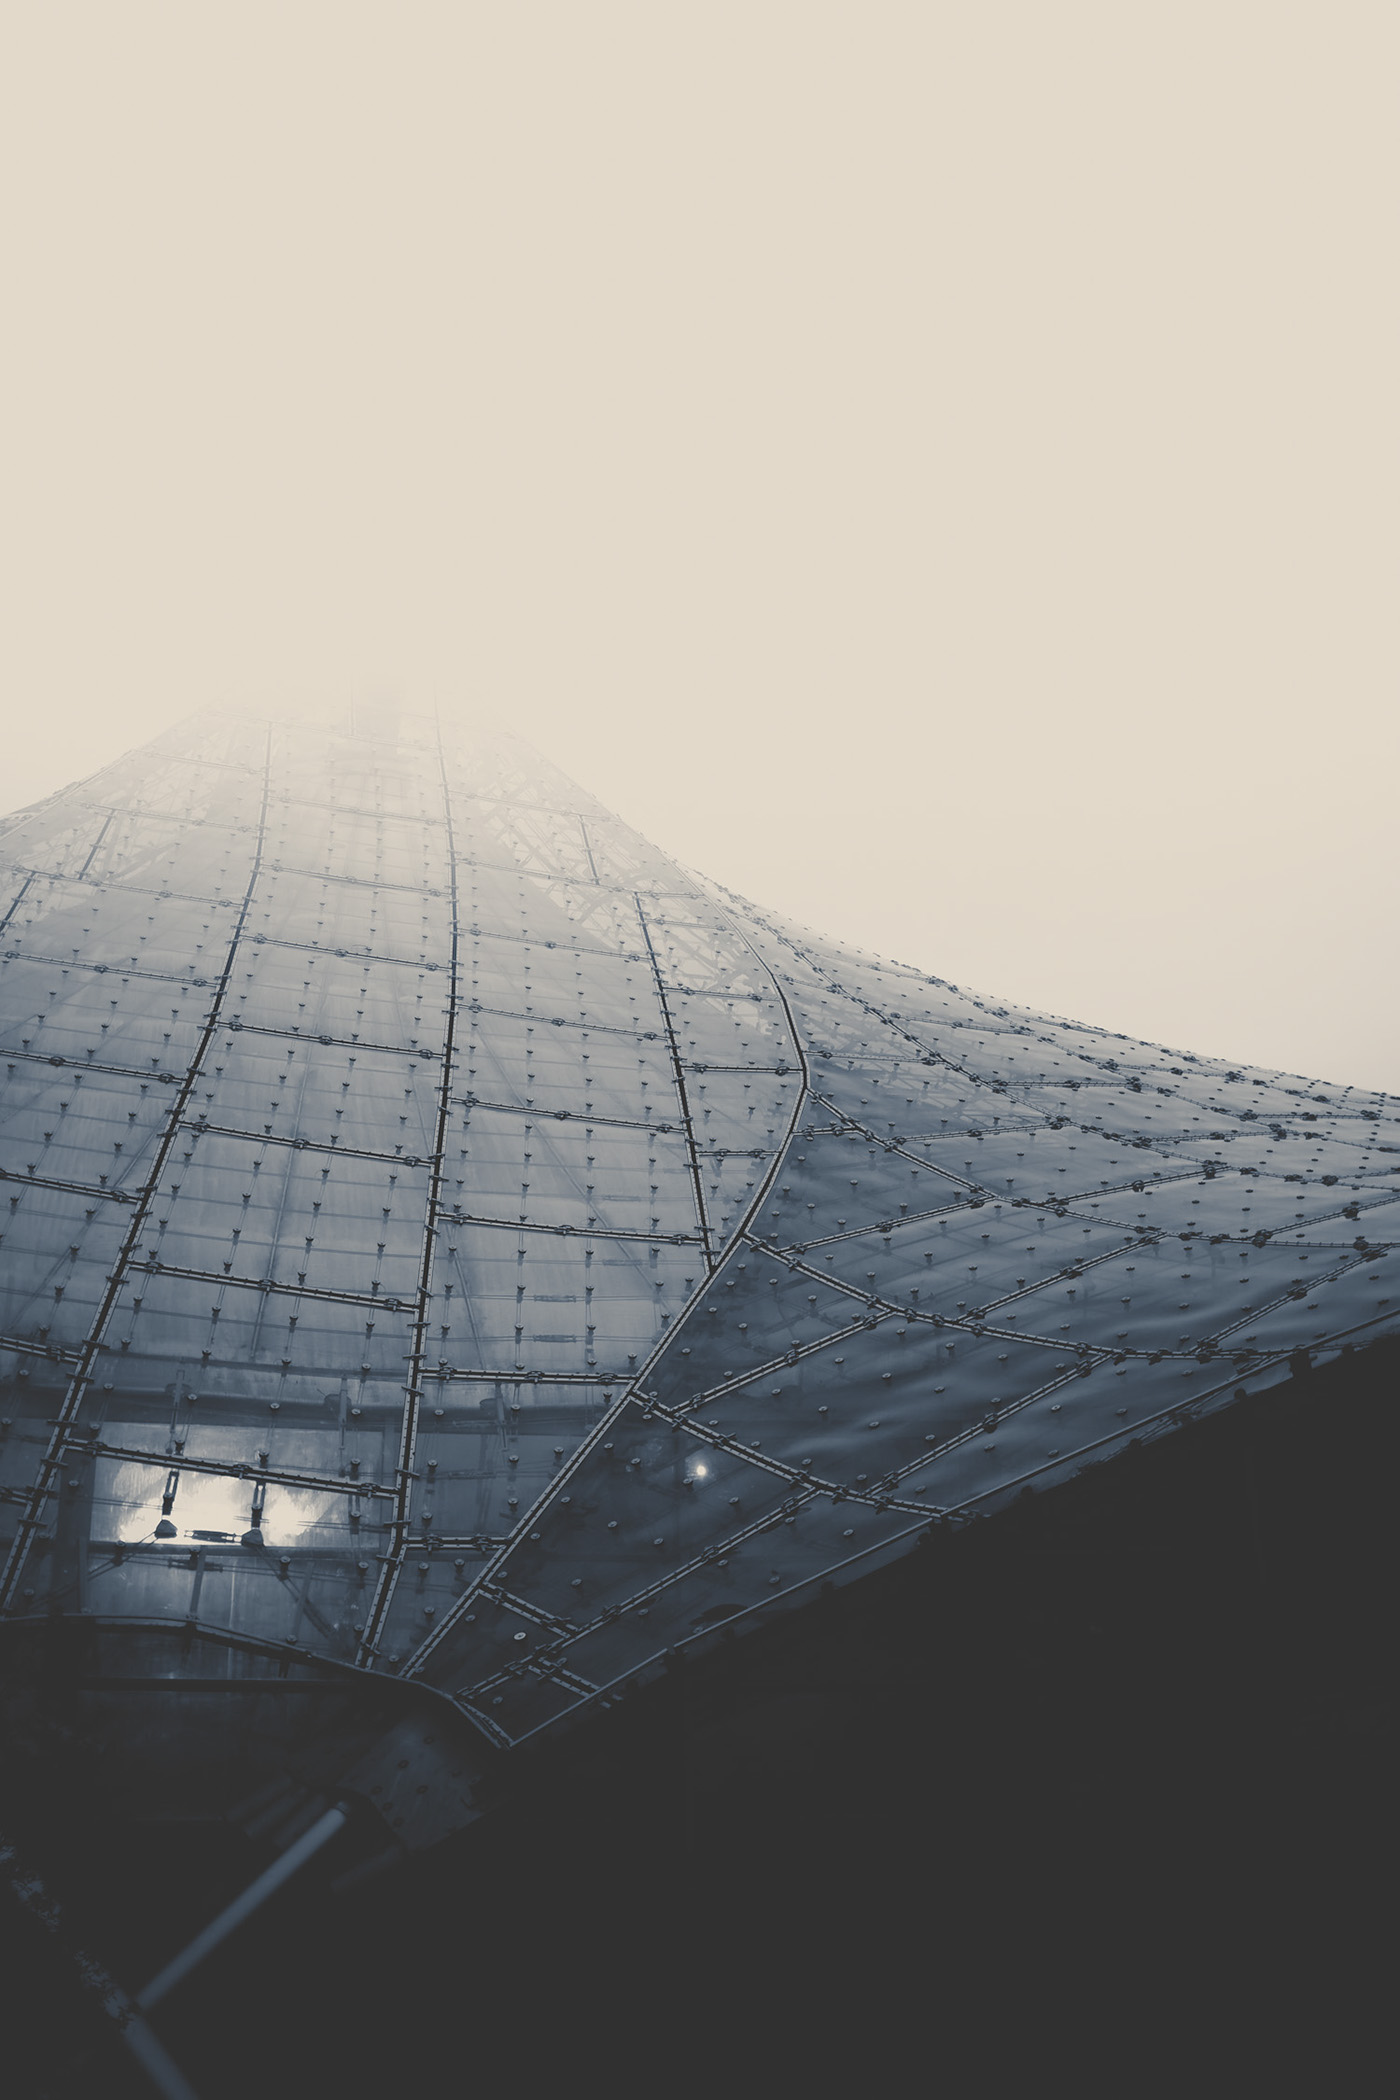 Космические корабли: фотографическое исследование современных архитектурных форм от Ларса Стигера